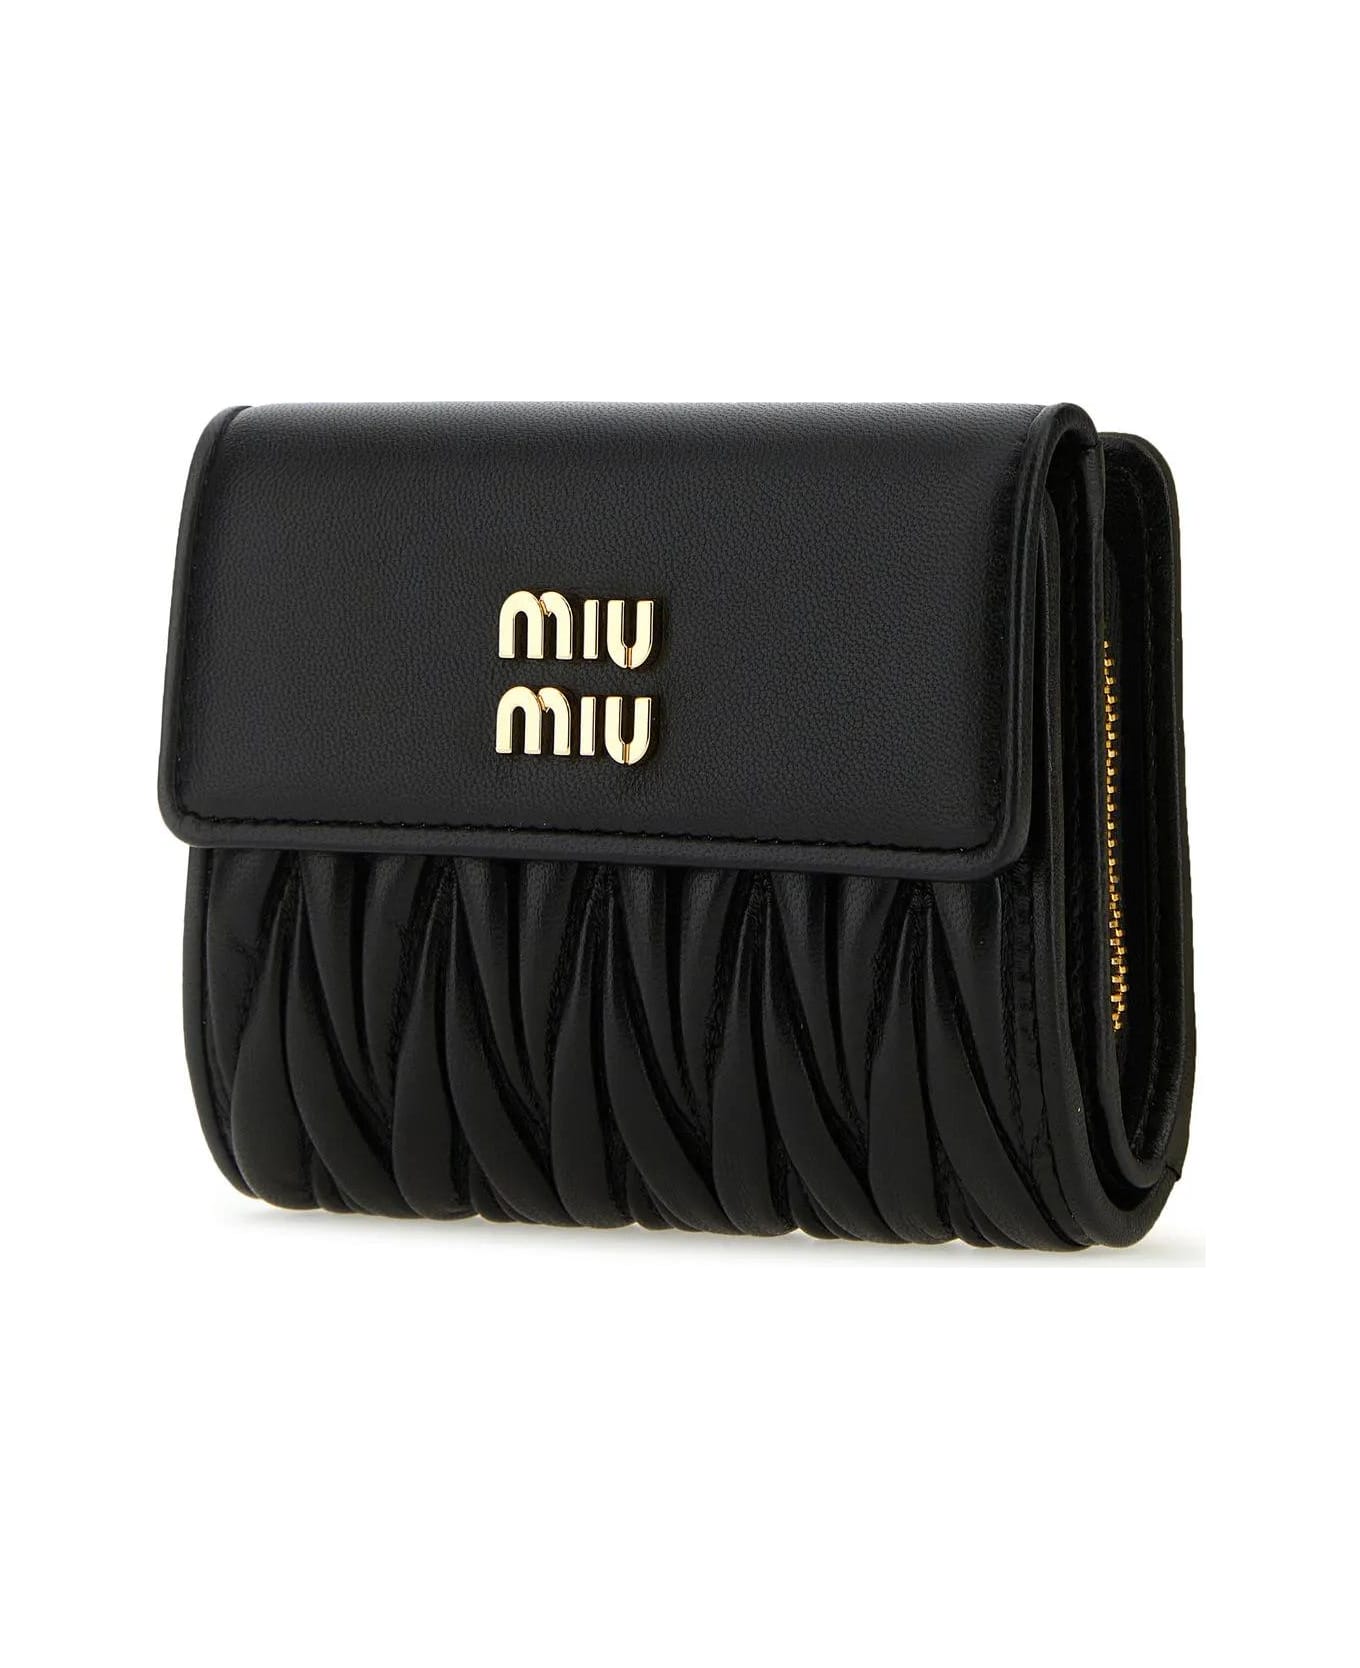 Miu Miu Black Leather Wallet - Nero 財布